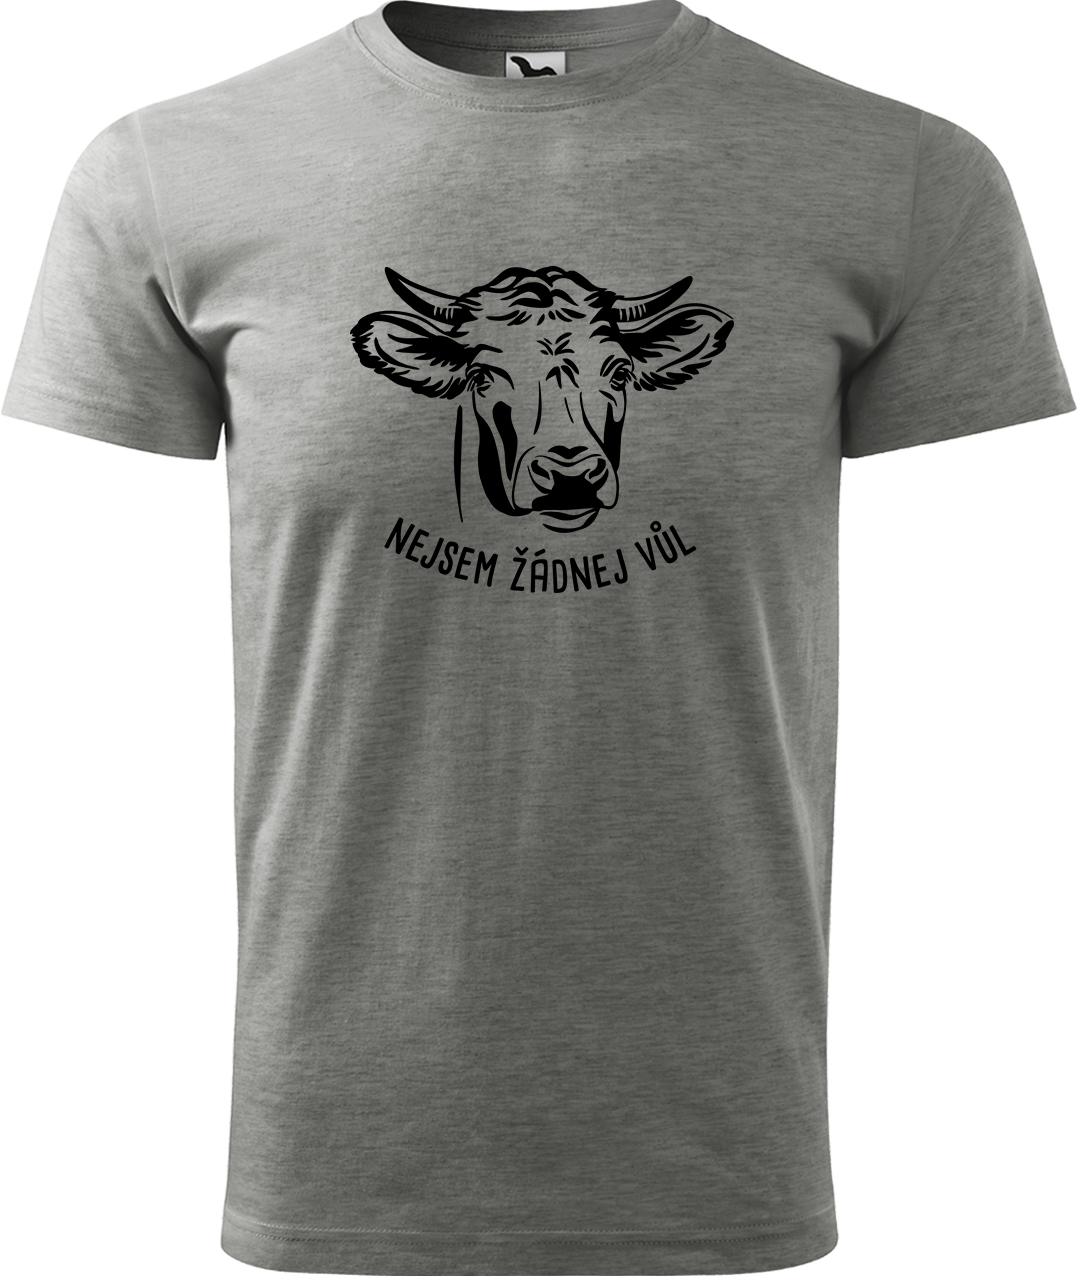 Pánské tričko s krávou - Nejsem žádnej vůl Velikost: XL, Barva: Tmavě šedý melír (12)